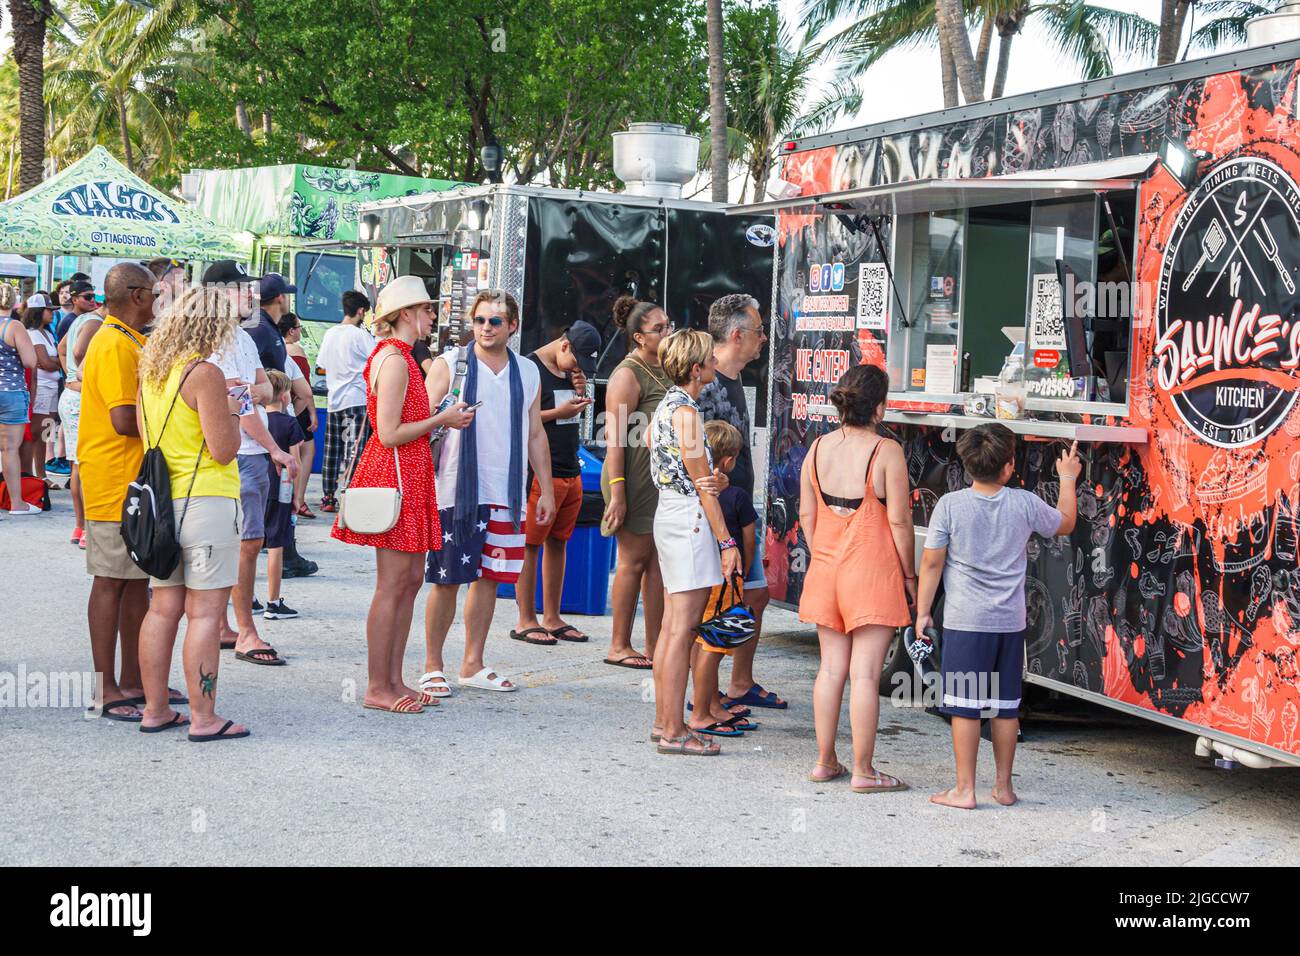 Miami Beach Florida, Ocean Terrace Fire auf der vierten 4. Juli Festival Event Feier, Lebensmittel LKW Linie Schlange Kunden Männer Frauen Familie wartet Stockfoto